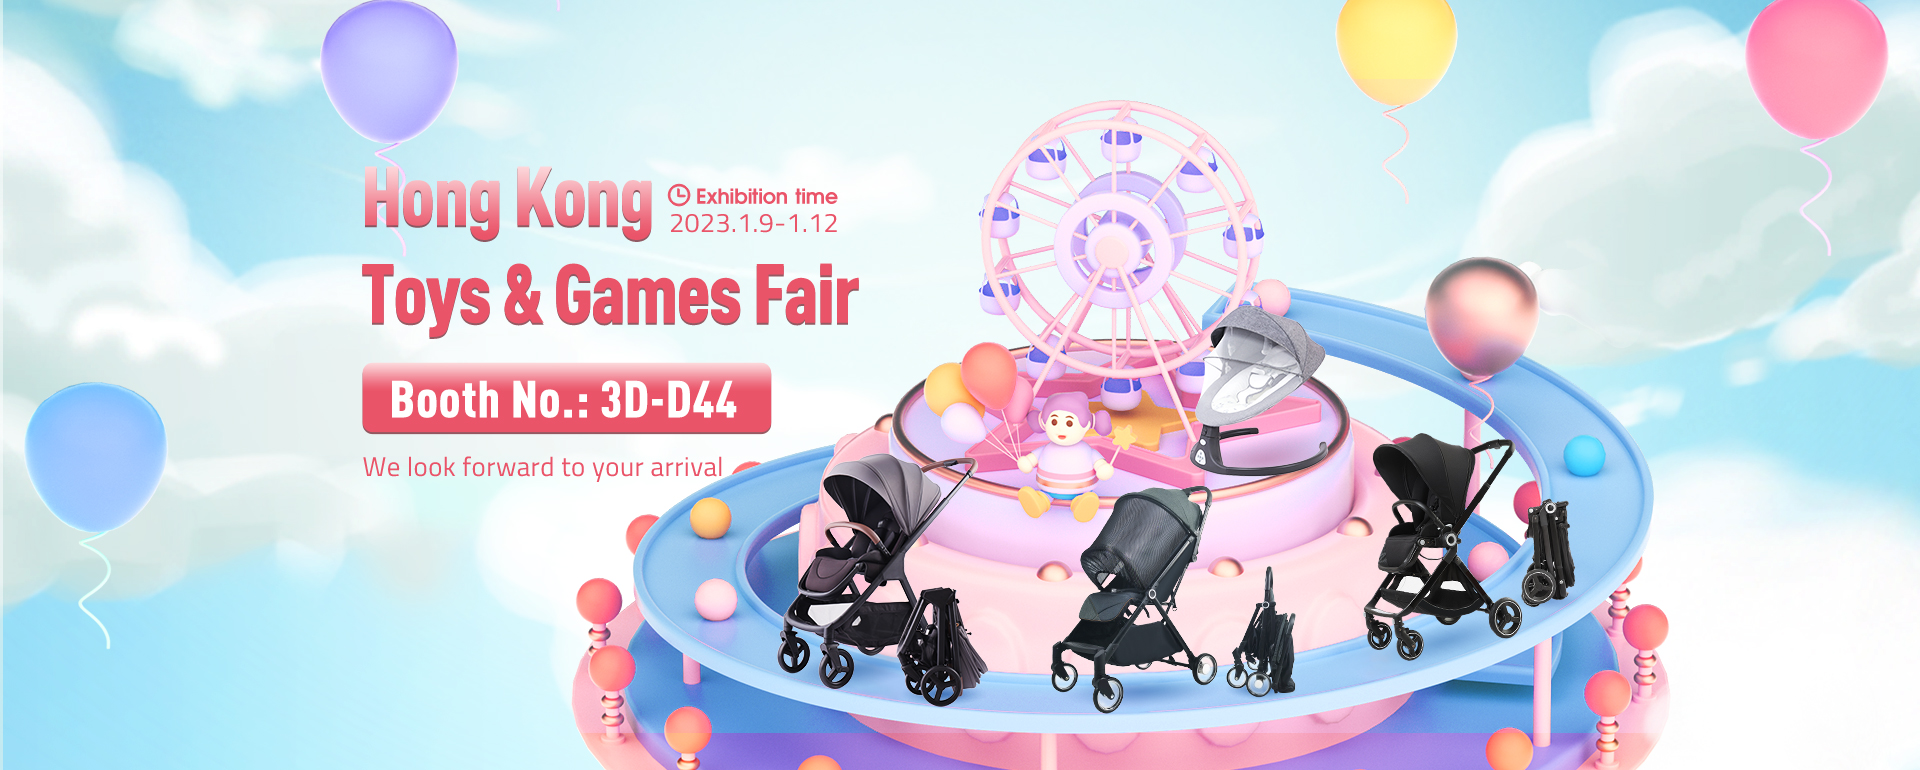 Babypie Hong Kong Toys & Games Fair